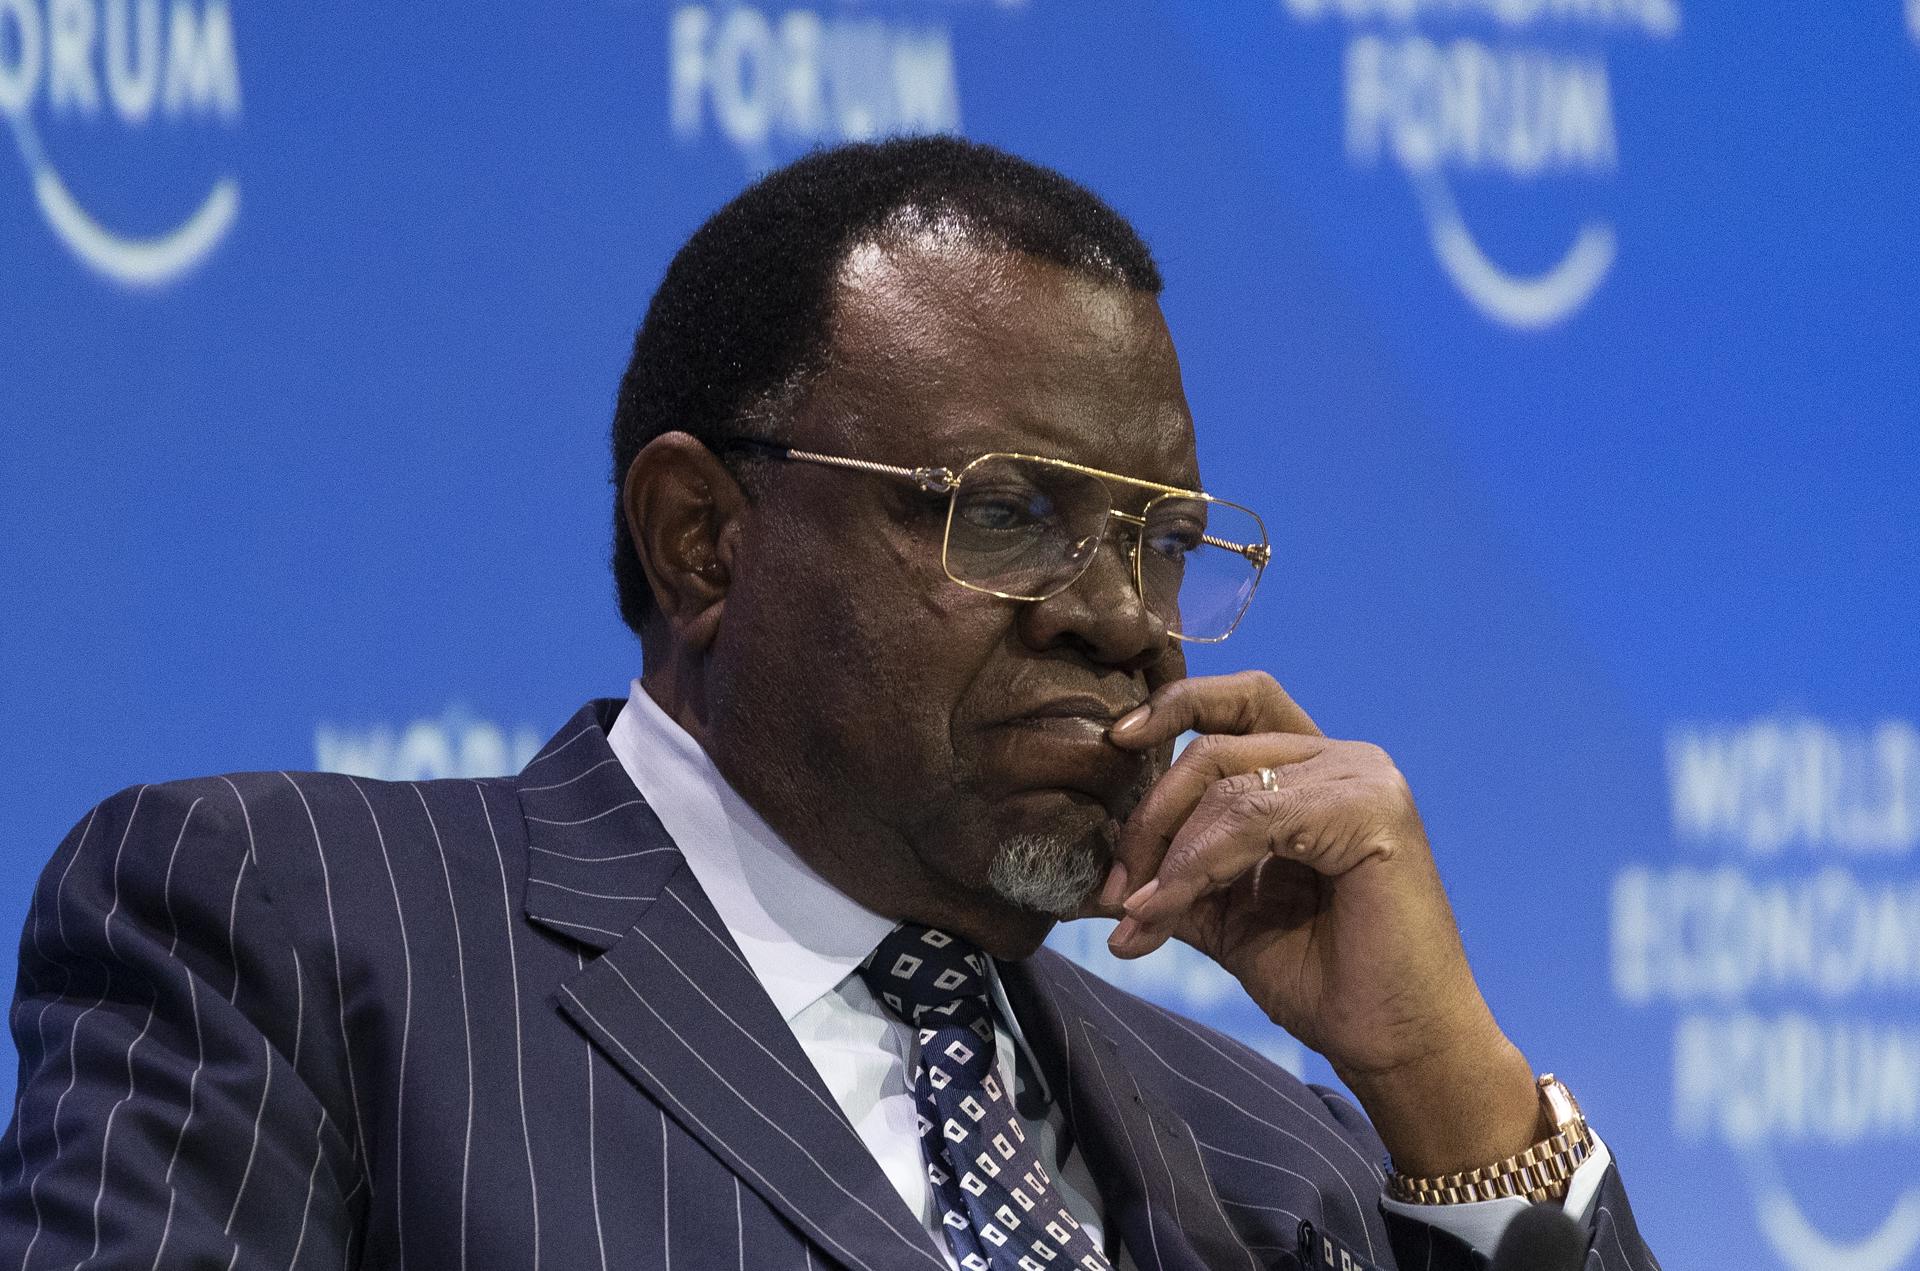 Mor el president de Namíbia, Hage Geingob, als 82 anys, després d'un càncer